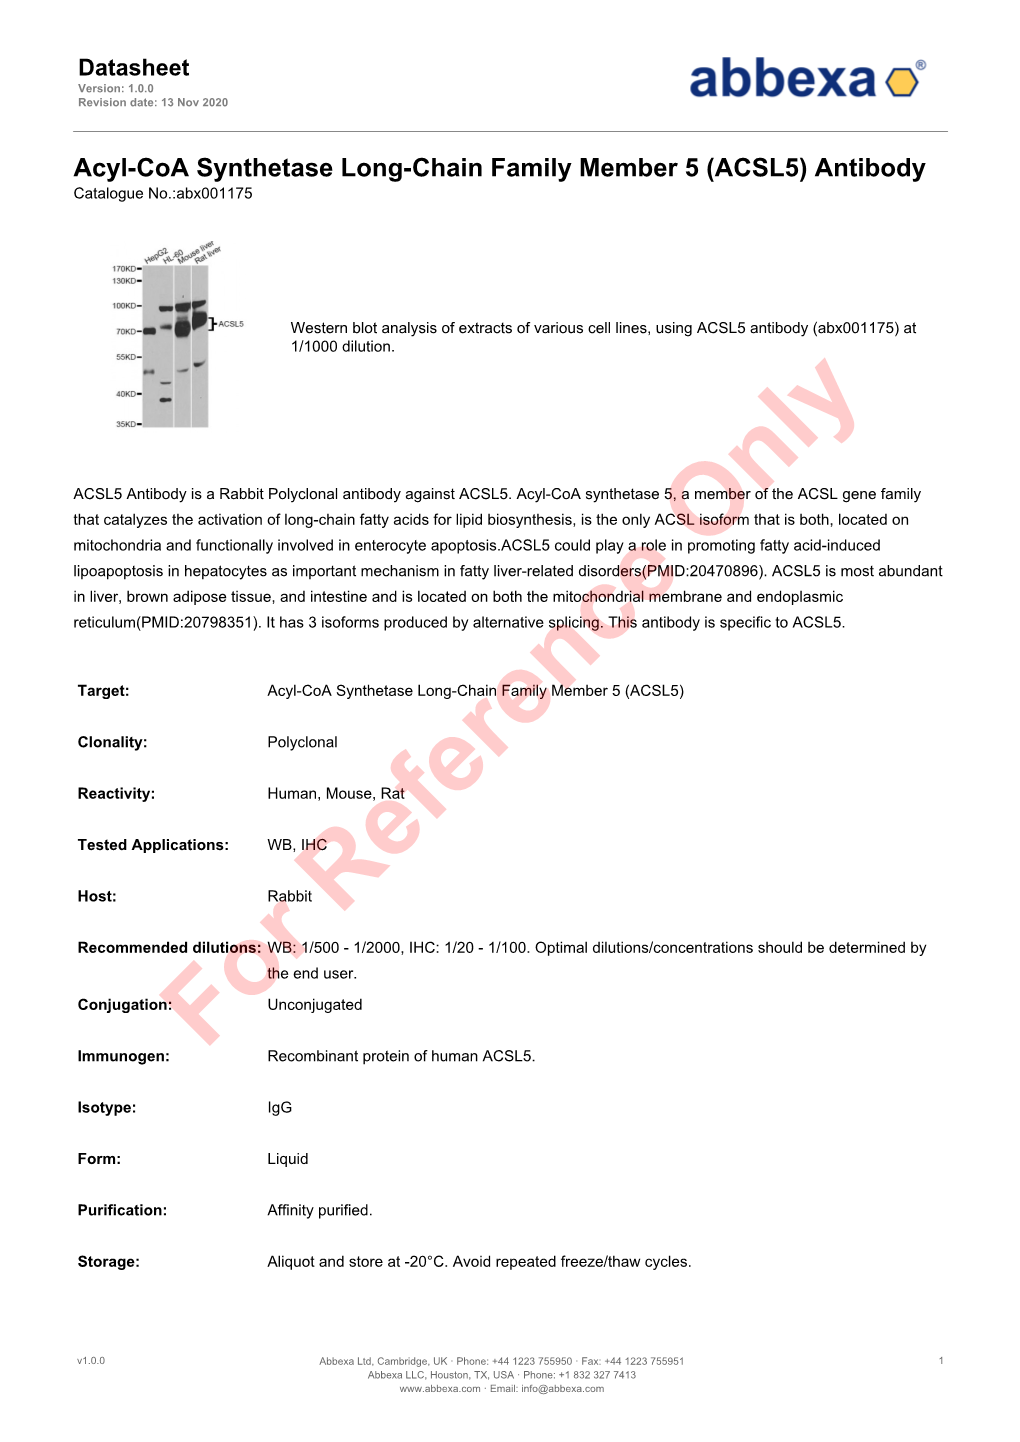 ACSL5) Antibody Catalogue No.:Abx001175